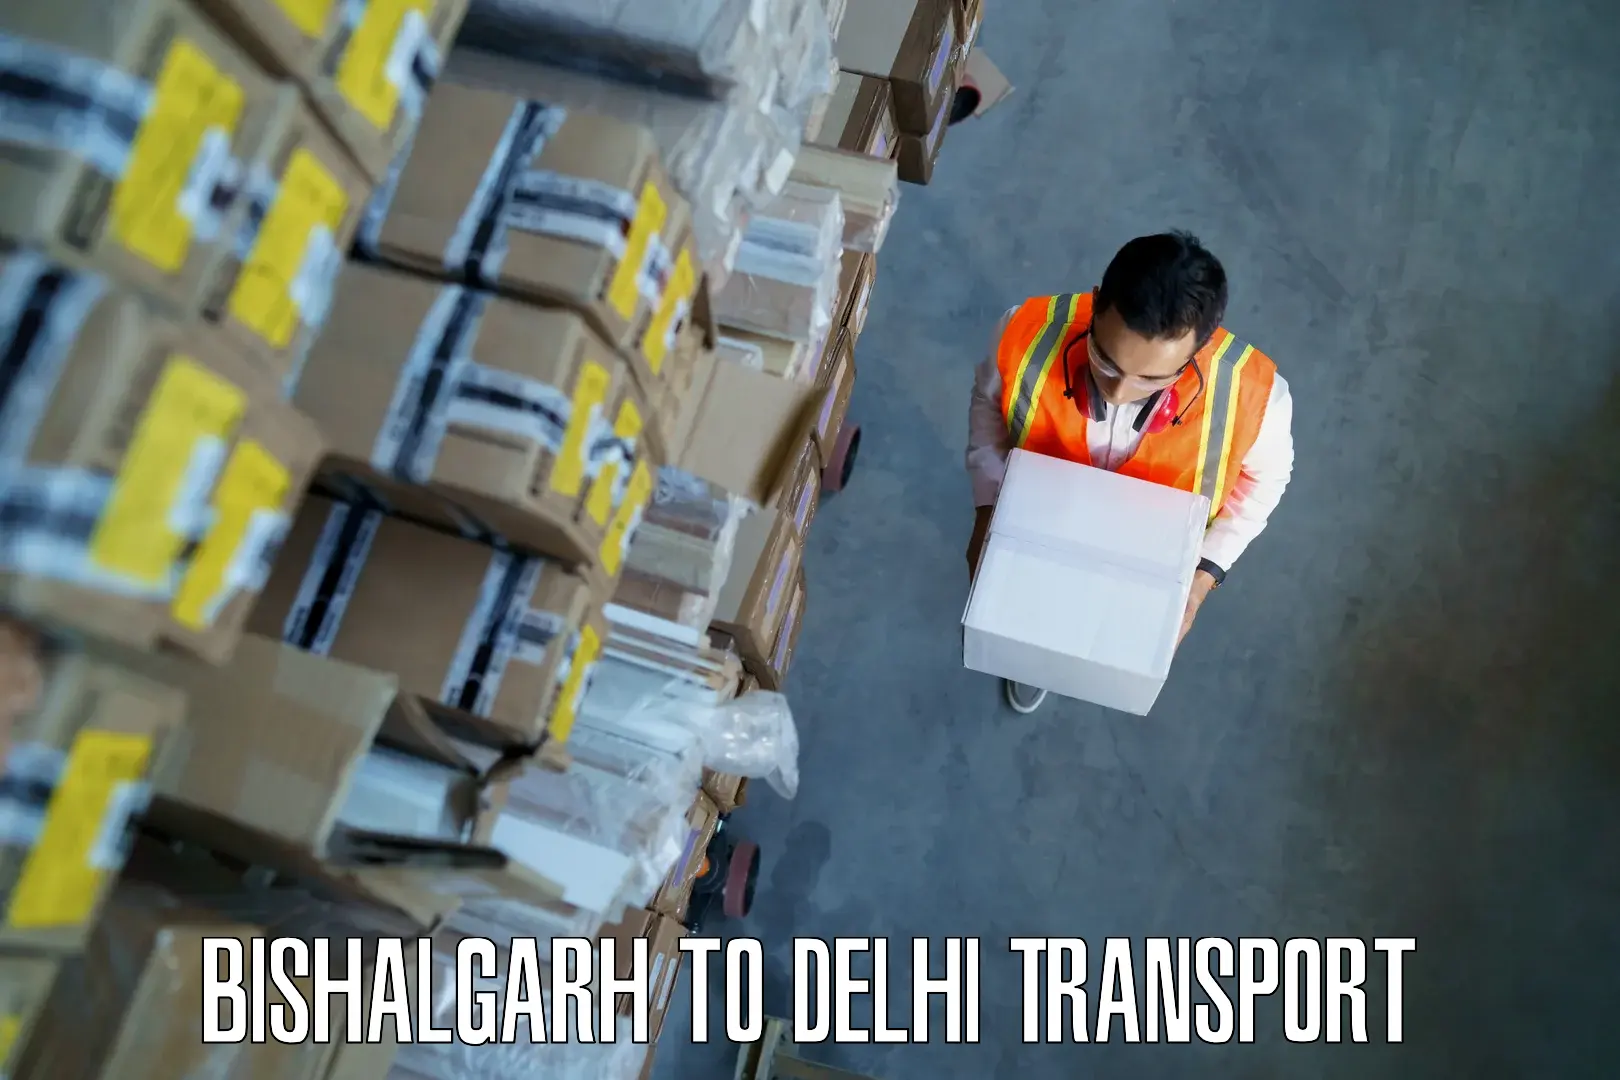 Bike shipping service Bishalgarh to Delhi